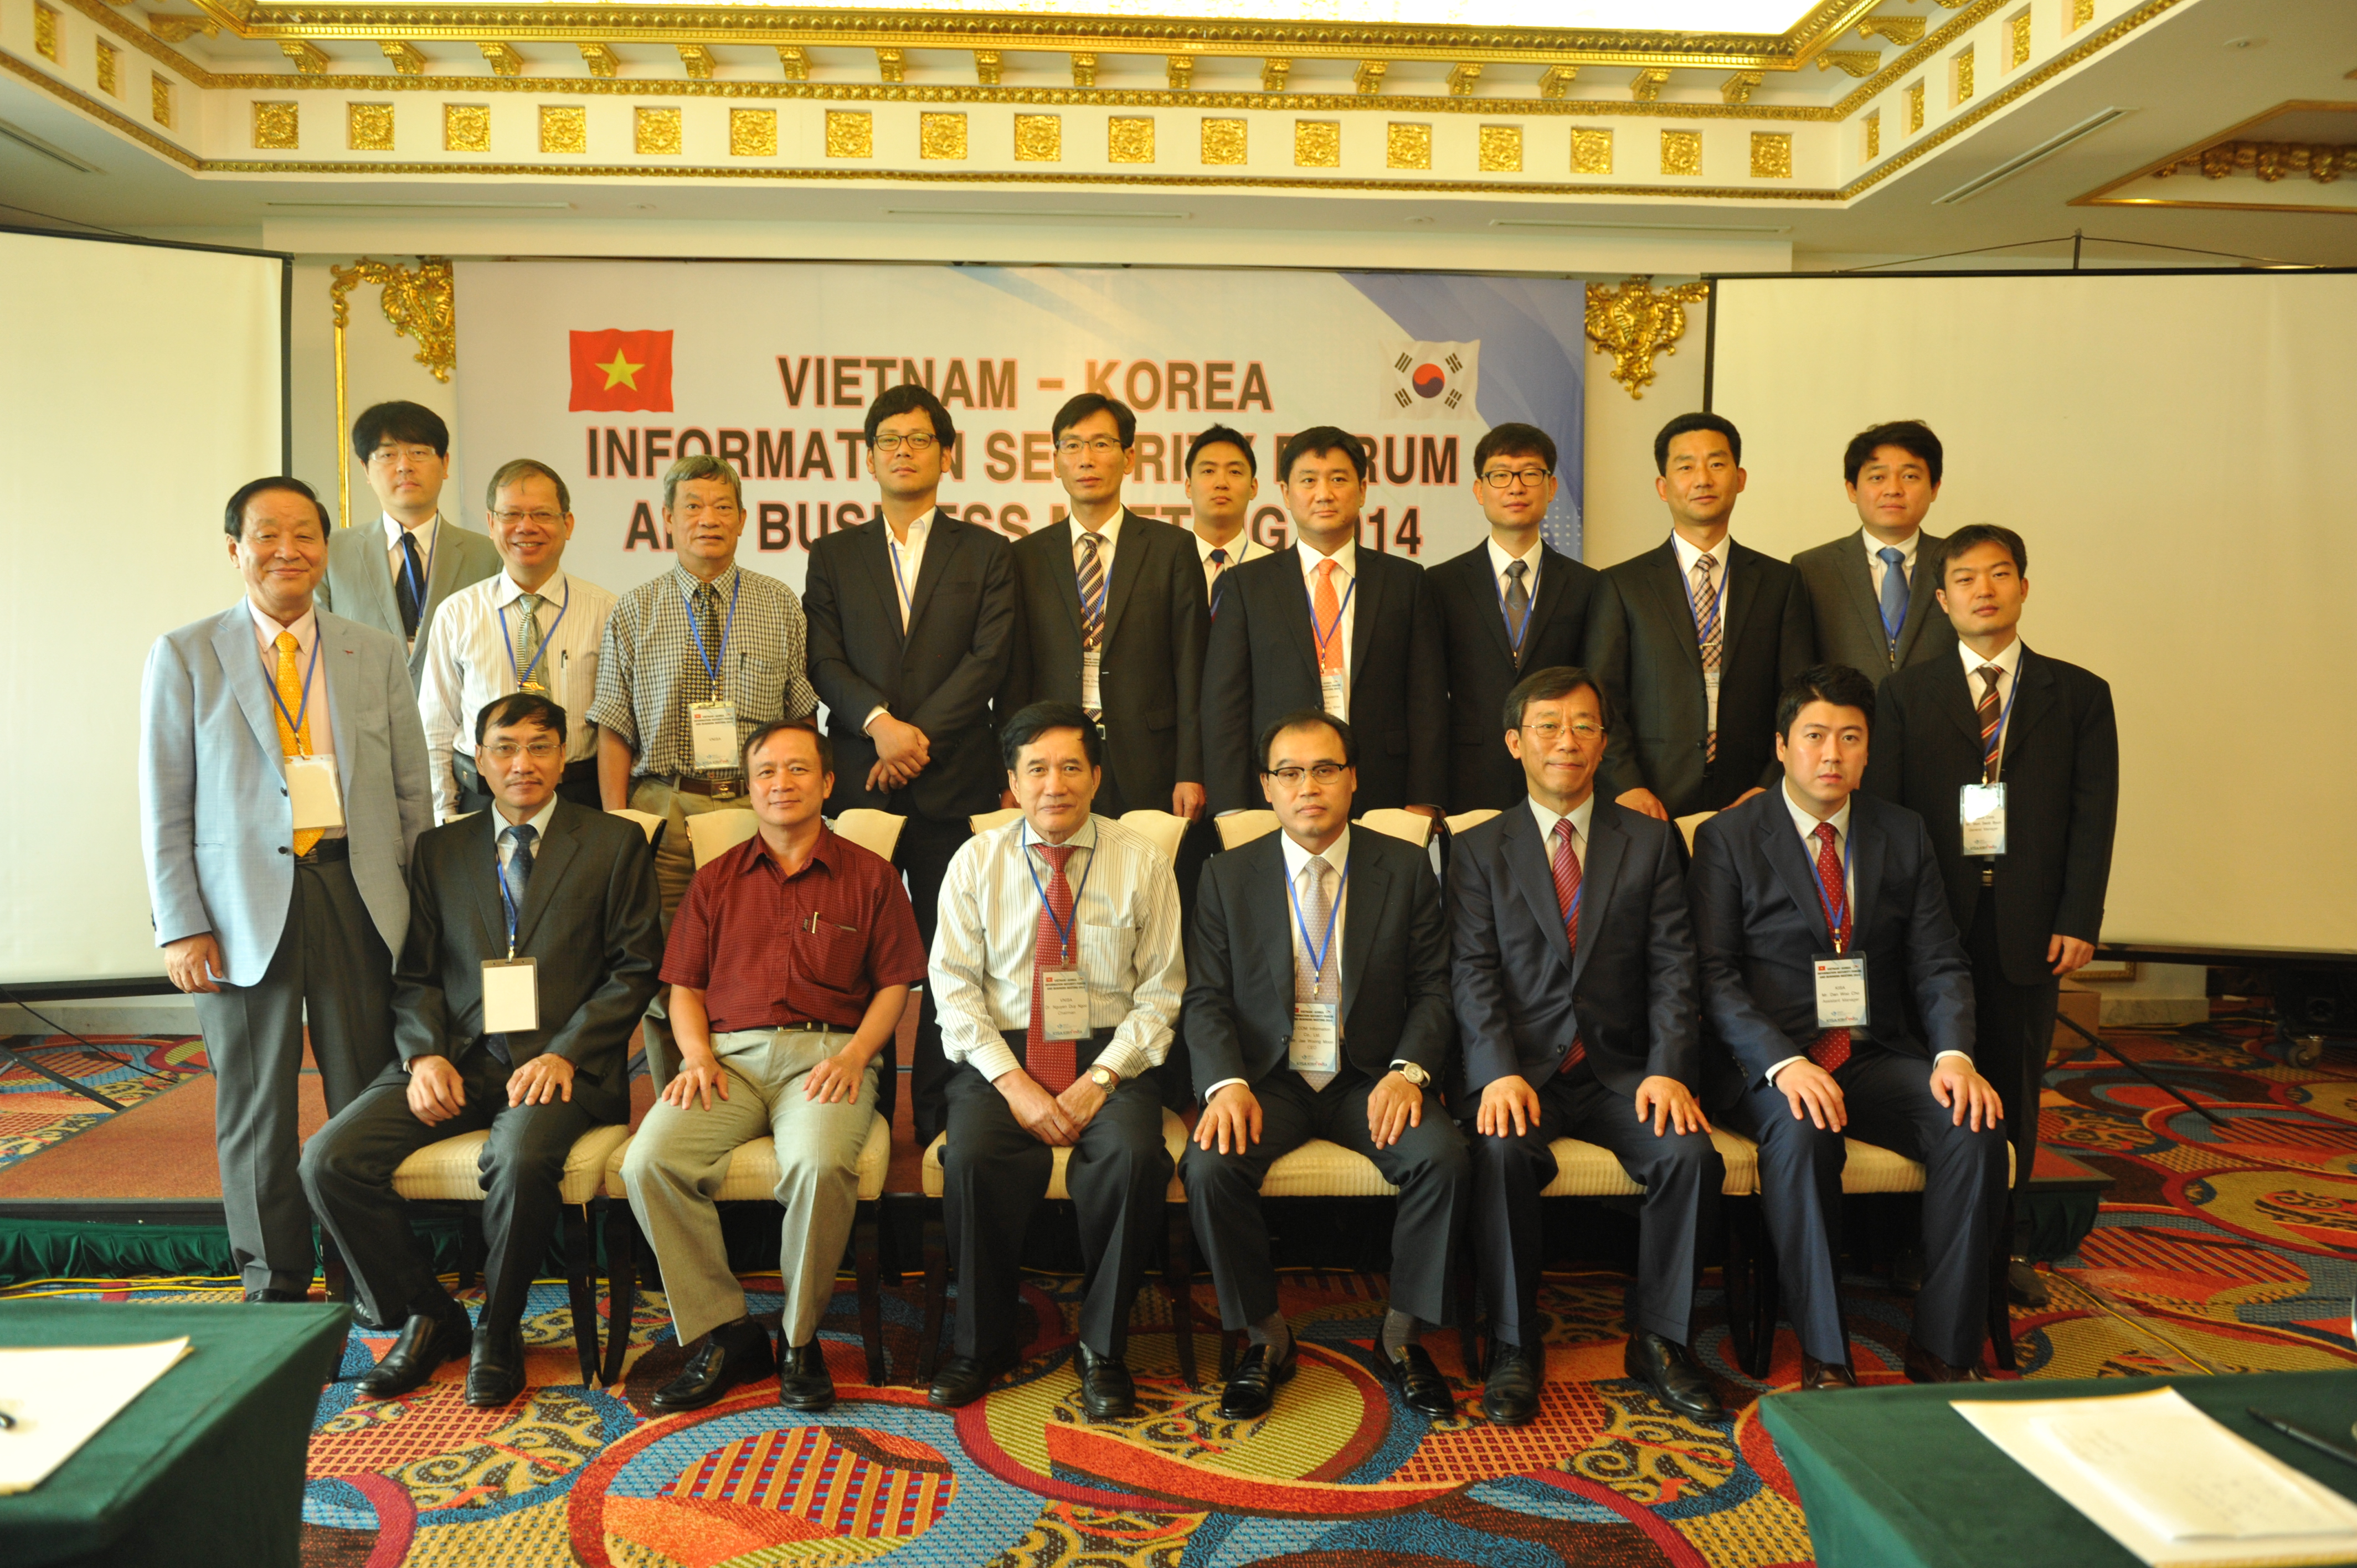 Diễn đàn An toàn thông tin và Gặp gỡ trao đổi thương mại 1:1 Việt Nam - Hàn Quốc